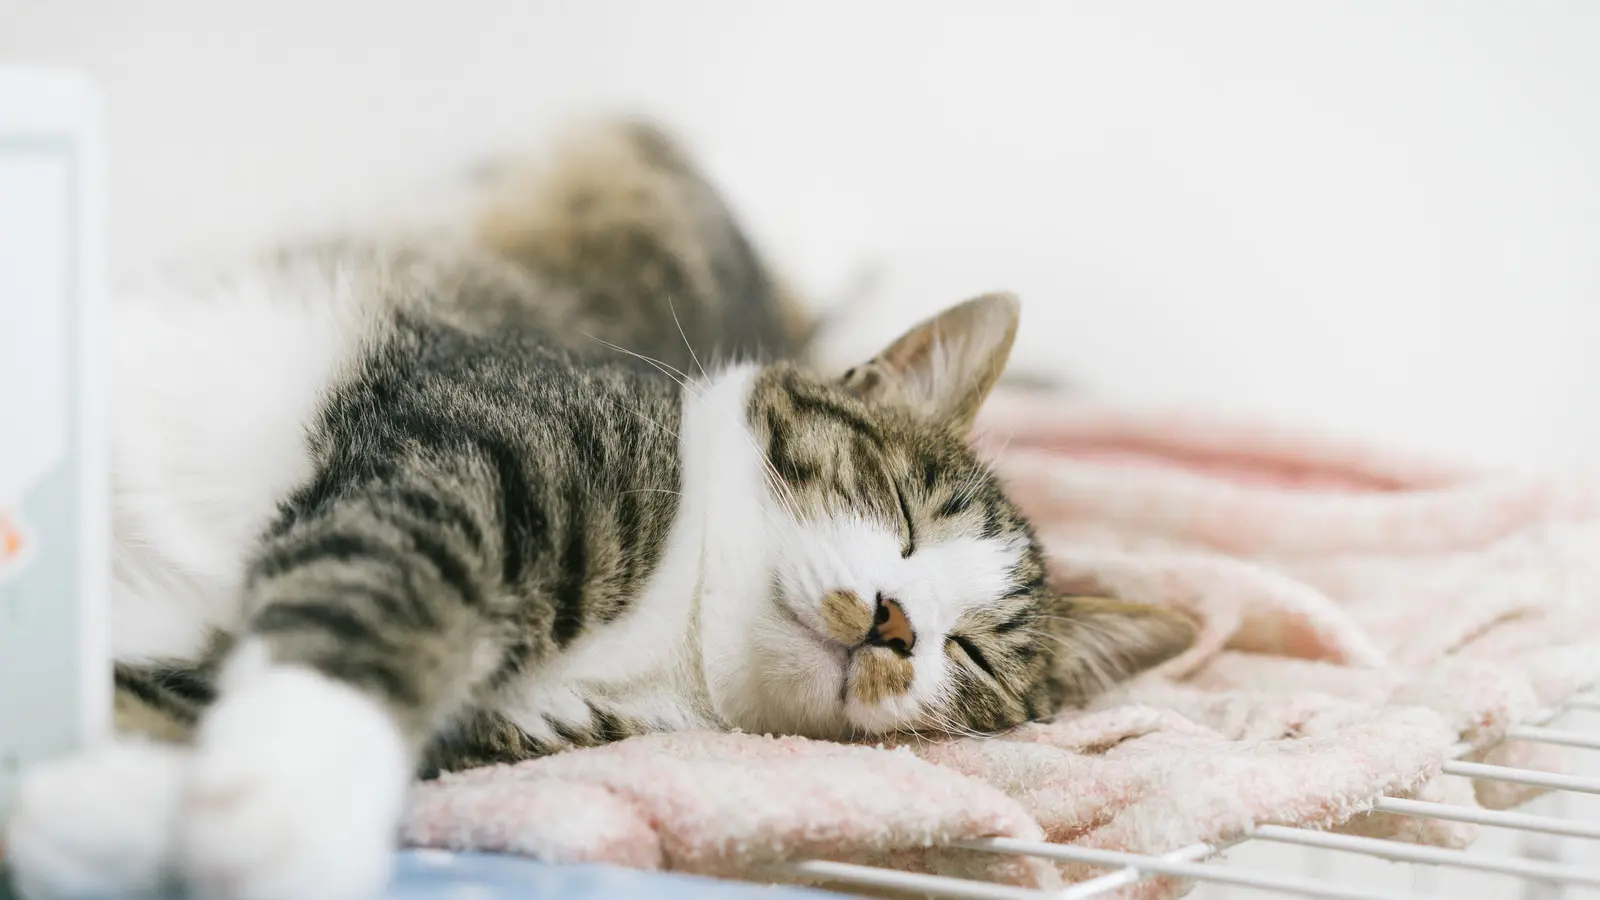 Lưu lượng máu đi khắp cơ thể giảm trong thời gian nghỉ ngơi là một nguyên nhân khiến tai mèo bị lạnh